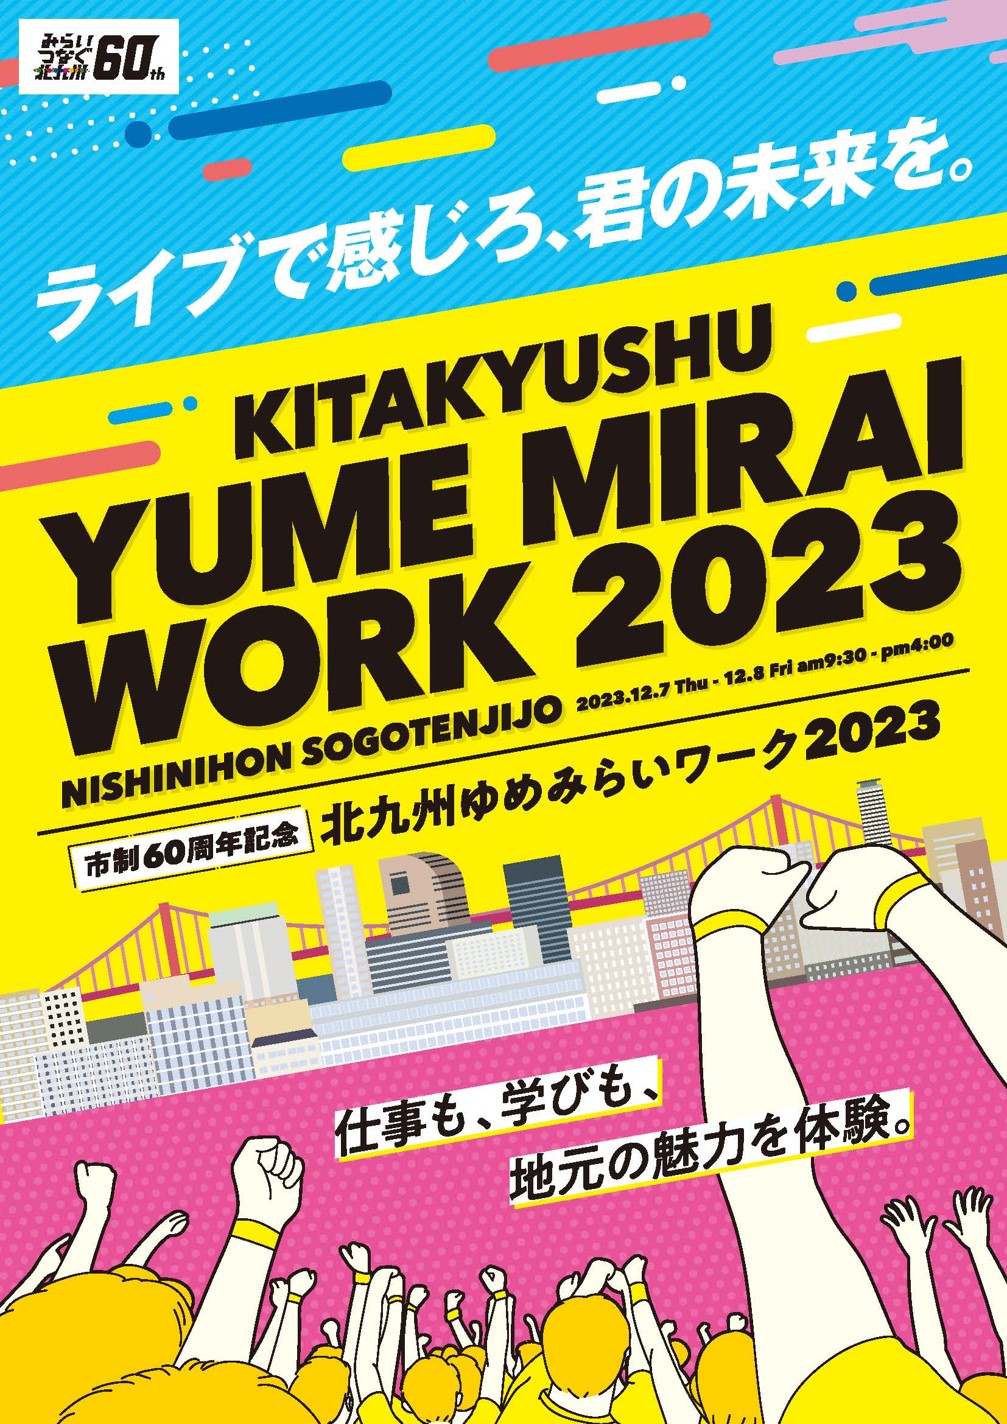 เราจะจัดแสดงที่ "Kitakyushu Yumemirai Work 2023"